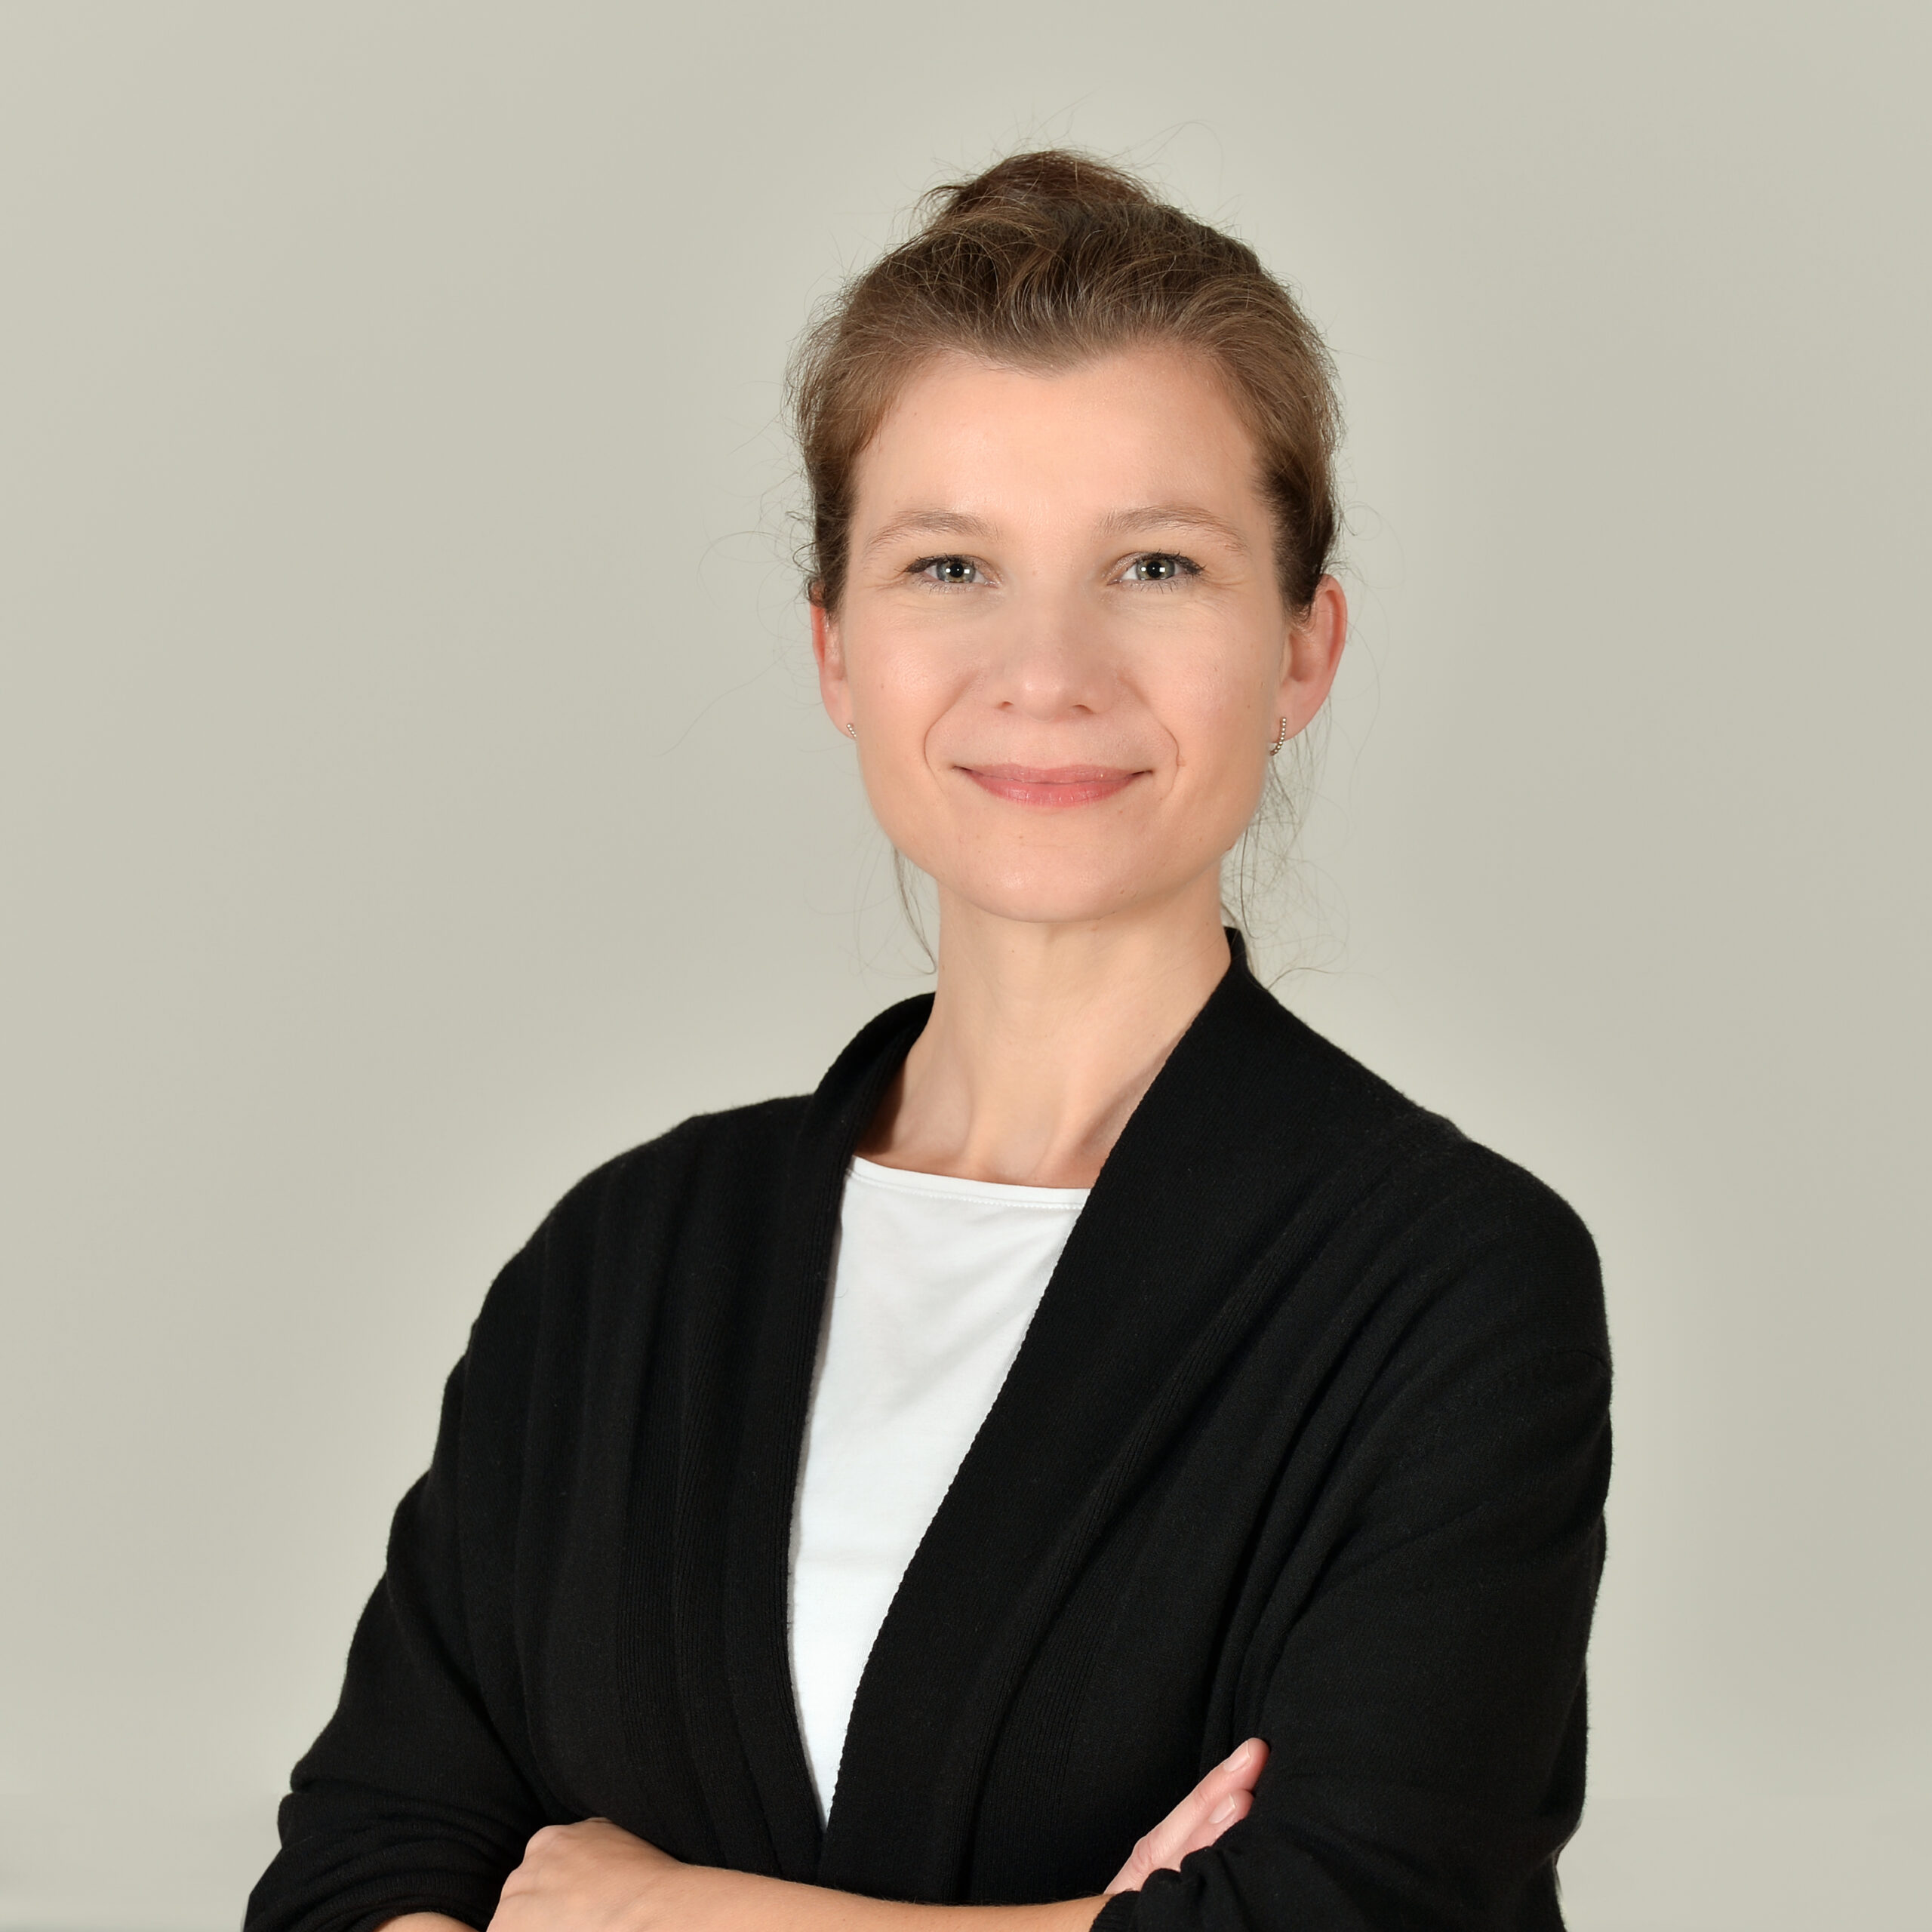 Profilbild von Dr. Anika Suding Appich. Sie trägt ein weißes Shirt und einen schwarzen Blazer.